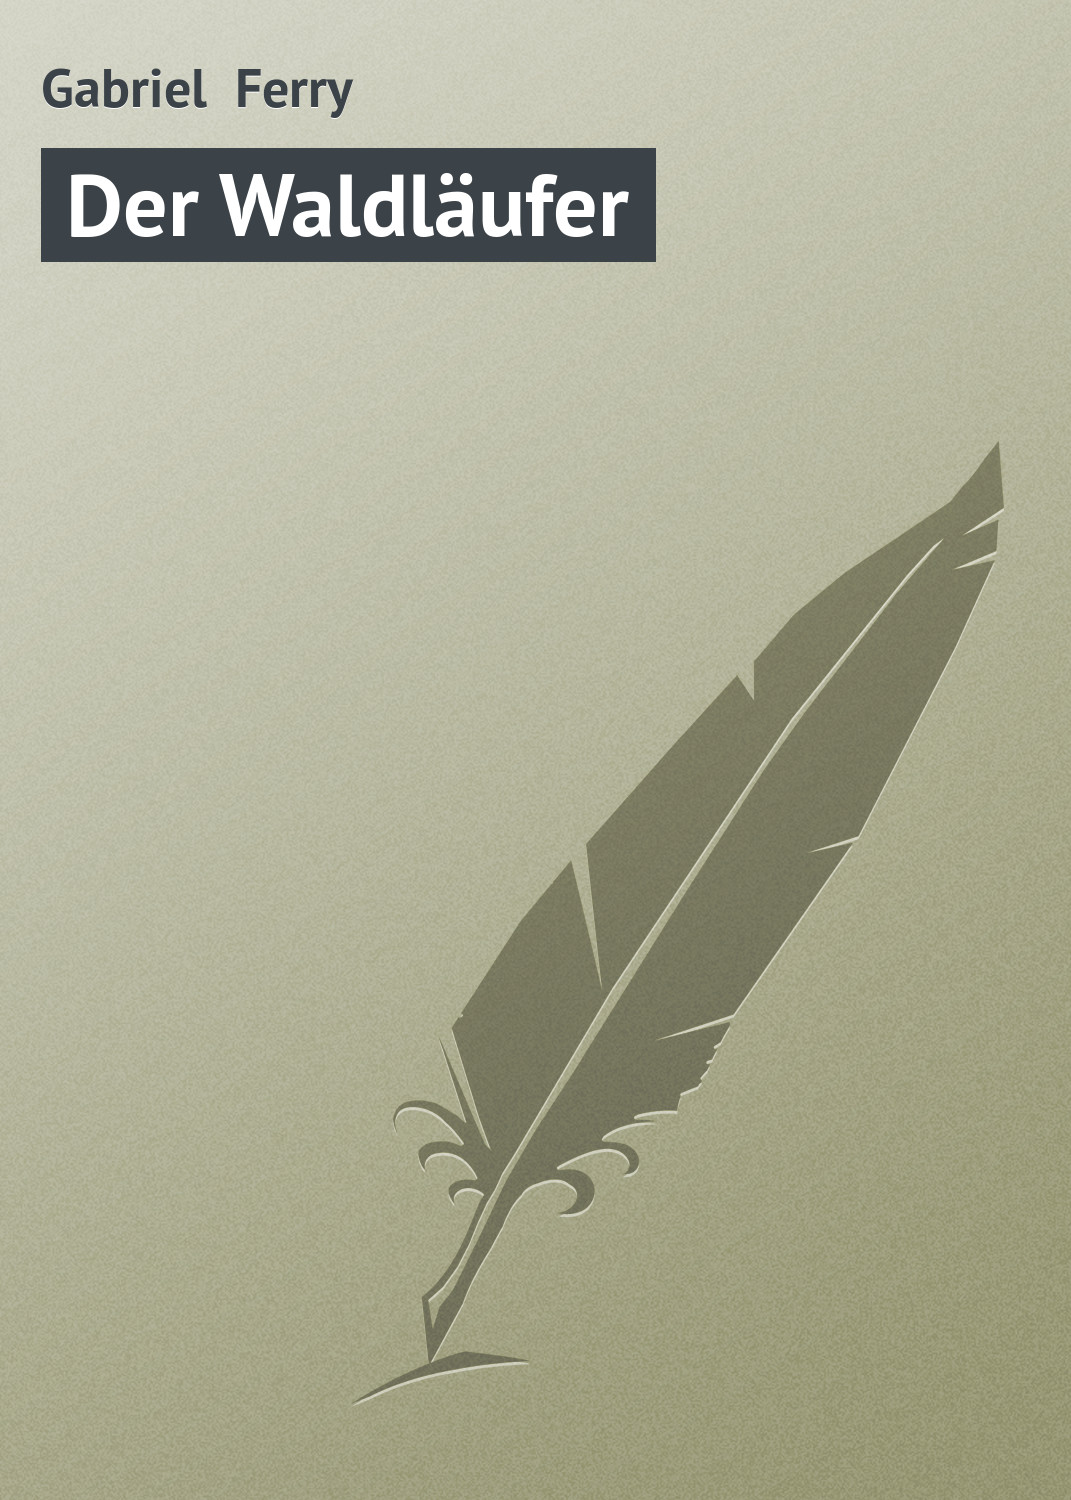 Книга Der Waldläufer из серии , созданная Gabriel Ferry, может относится к жанру Зарубежная старинная литература, Зарубежная классика. Стоимость электронной книги Der Waldläufer с идентификатором 21105198 составляет 5.99 руб.